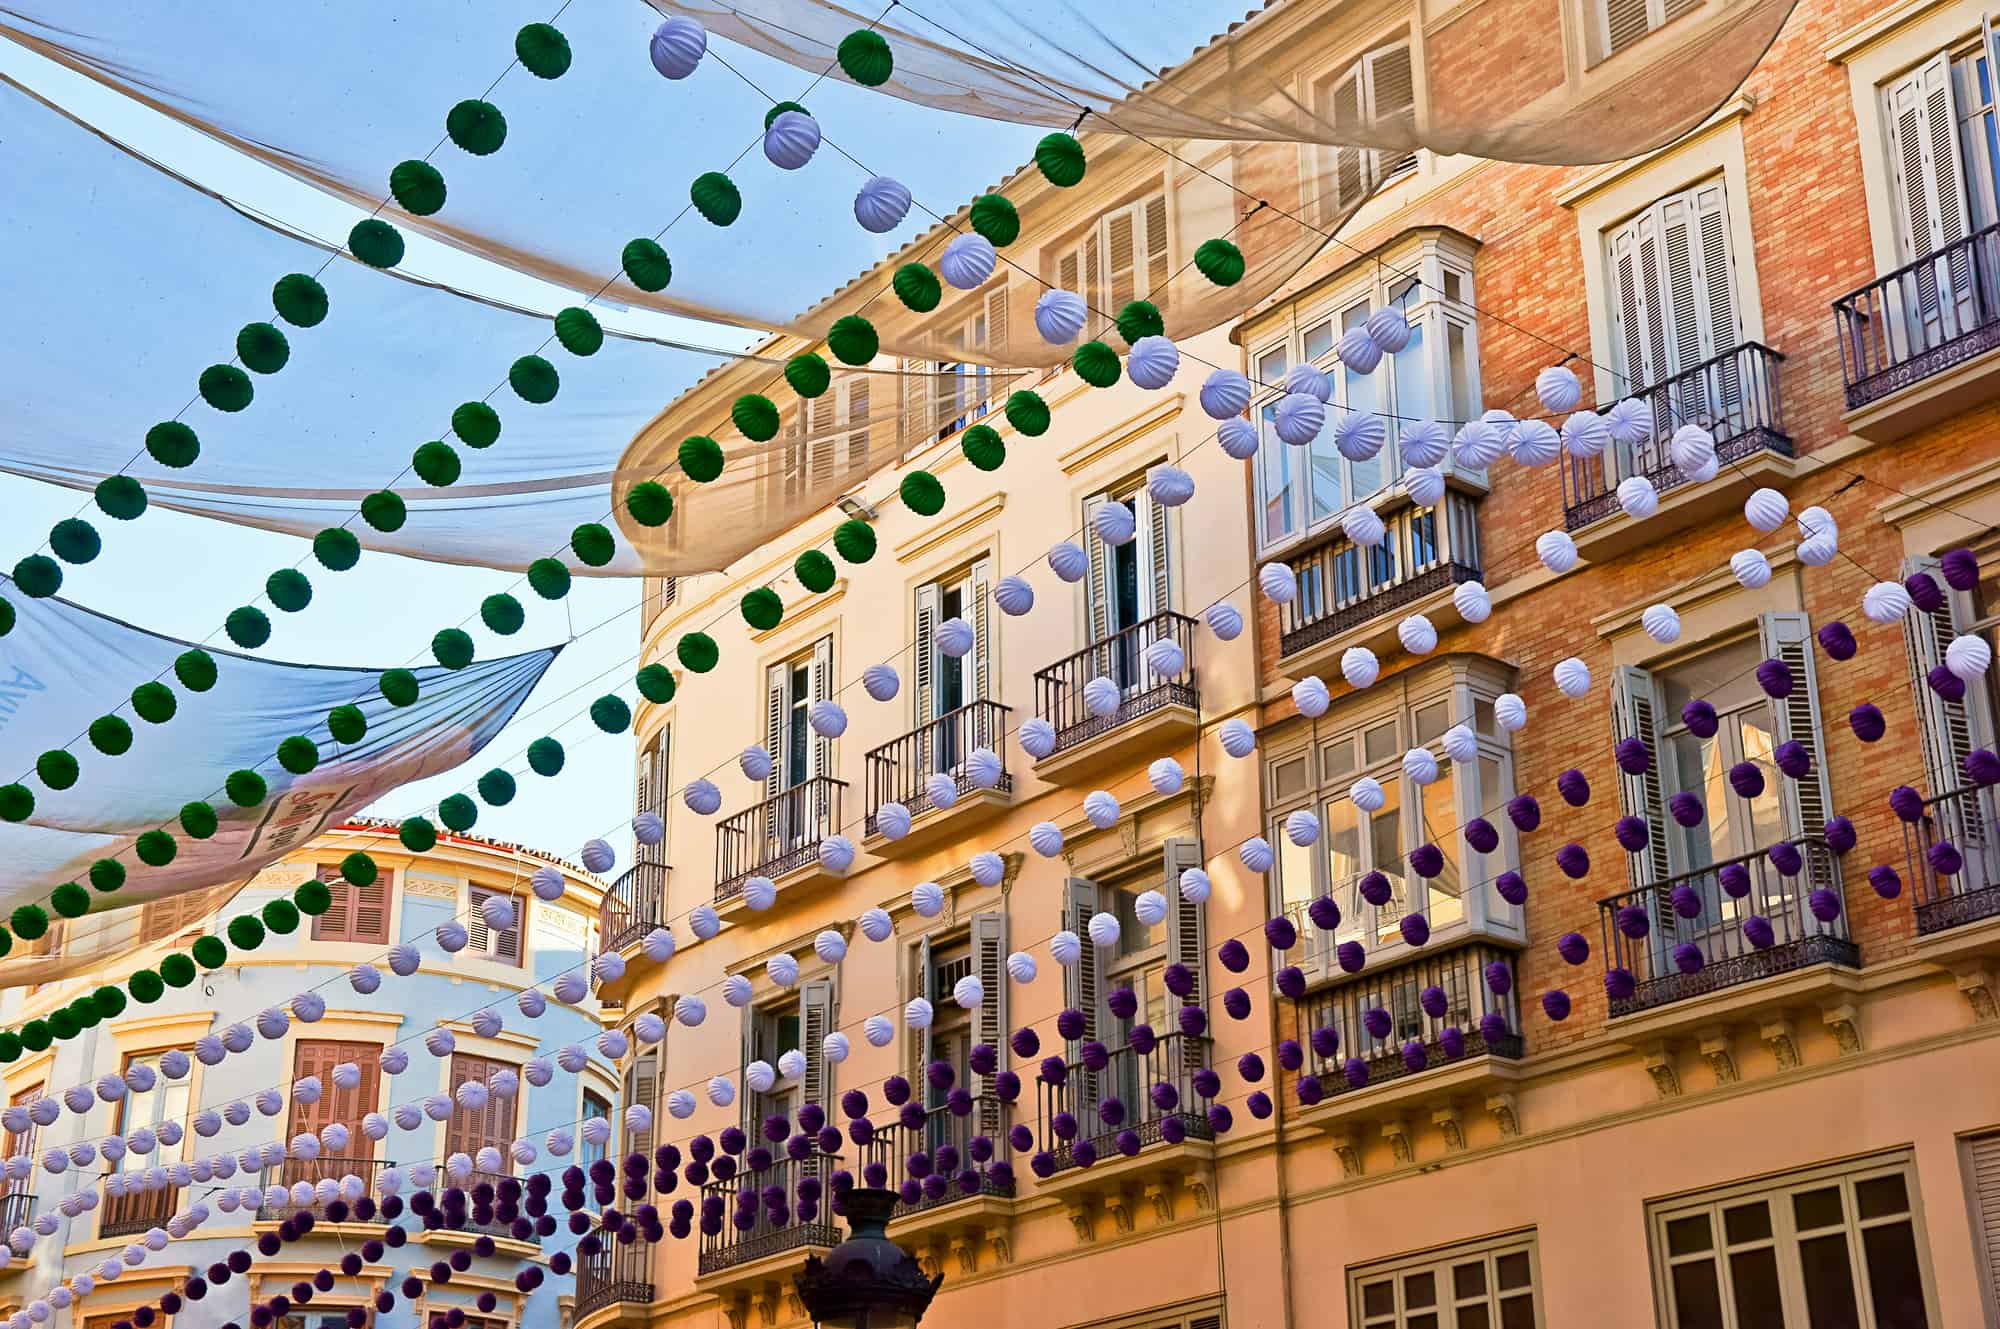 Malaga in fair, Spain. Larios street view